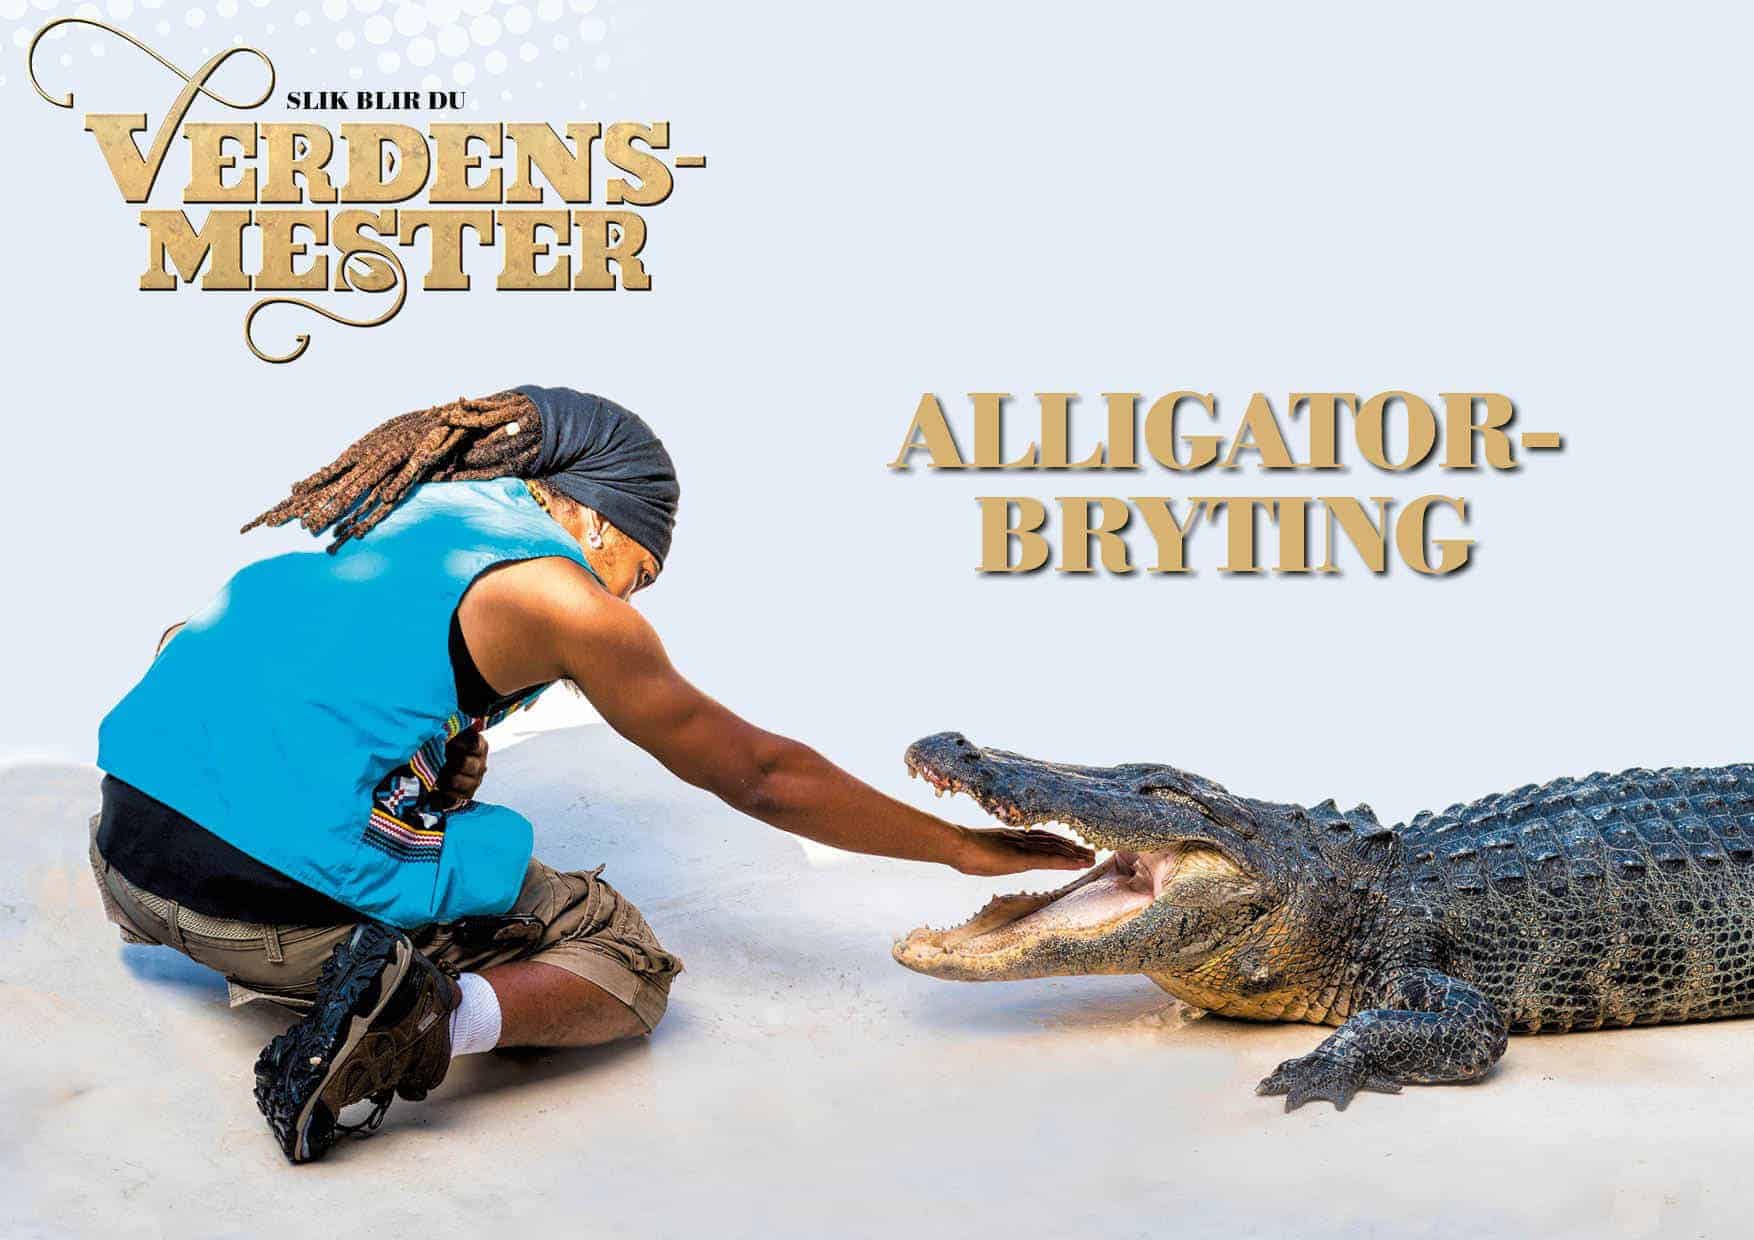 Slik blir du verdensmester: alligatorbryting